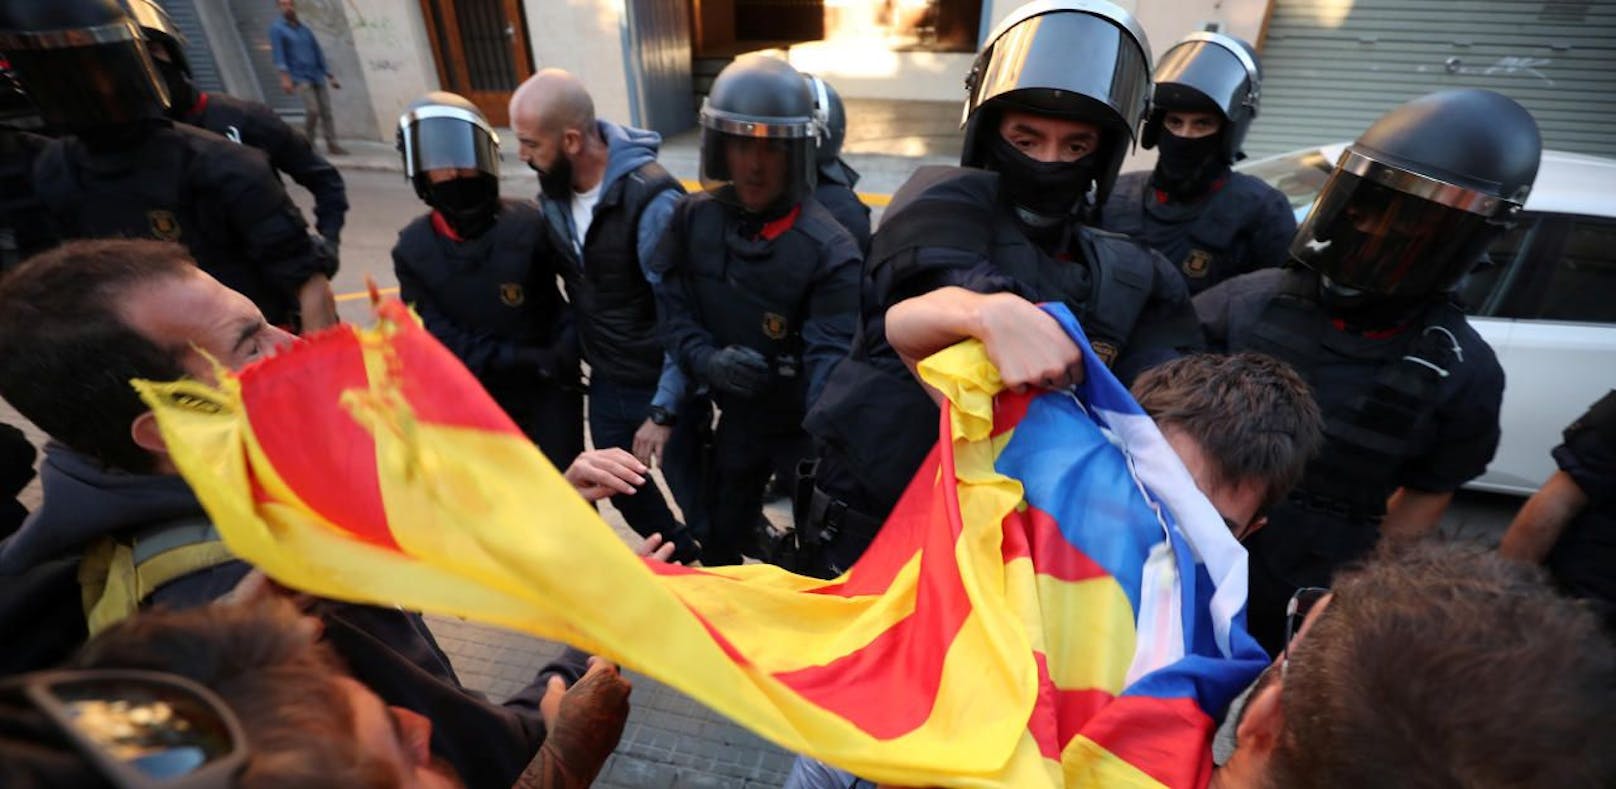 Polizisten rangeln mit Demonstranten in Barcelona, bevor Hausdurchsuchungen durchgeführt werden.